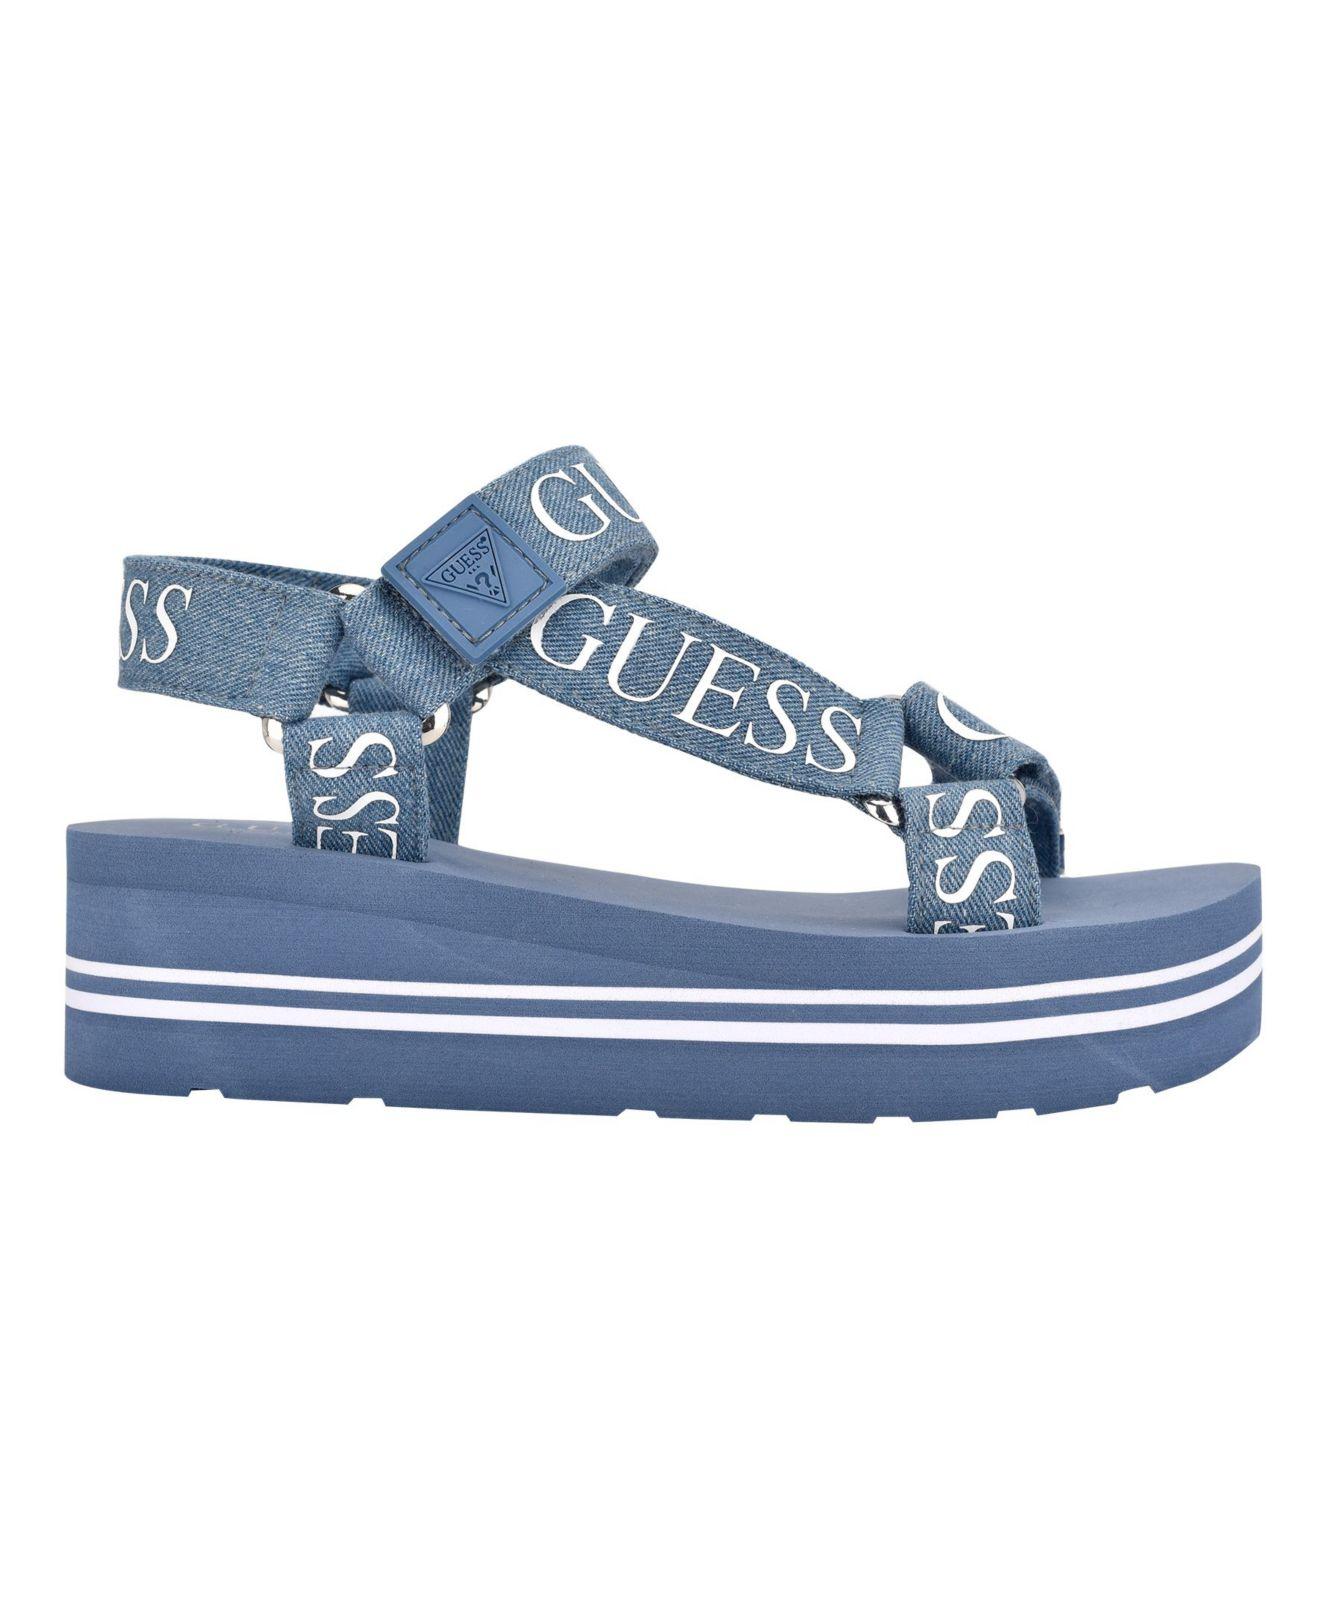 Guess Avin Logo Sport Sandals in Blue | Lyst